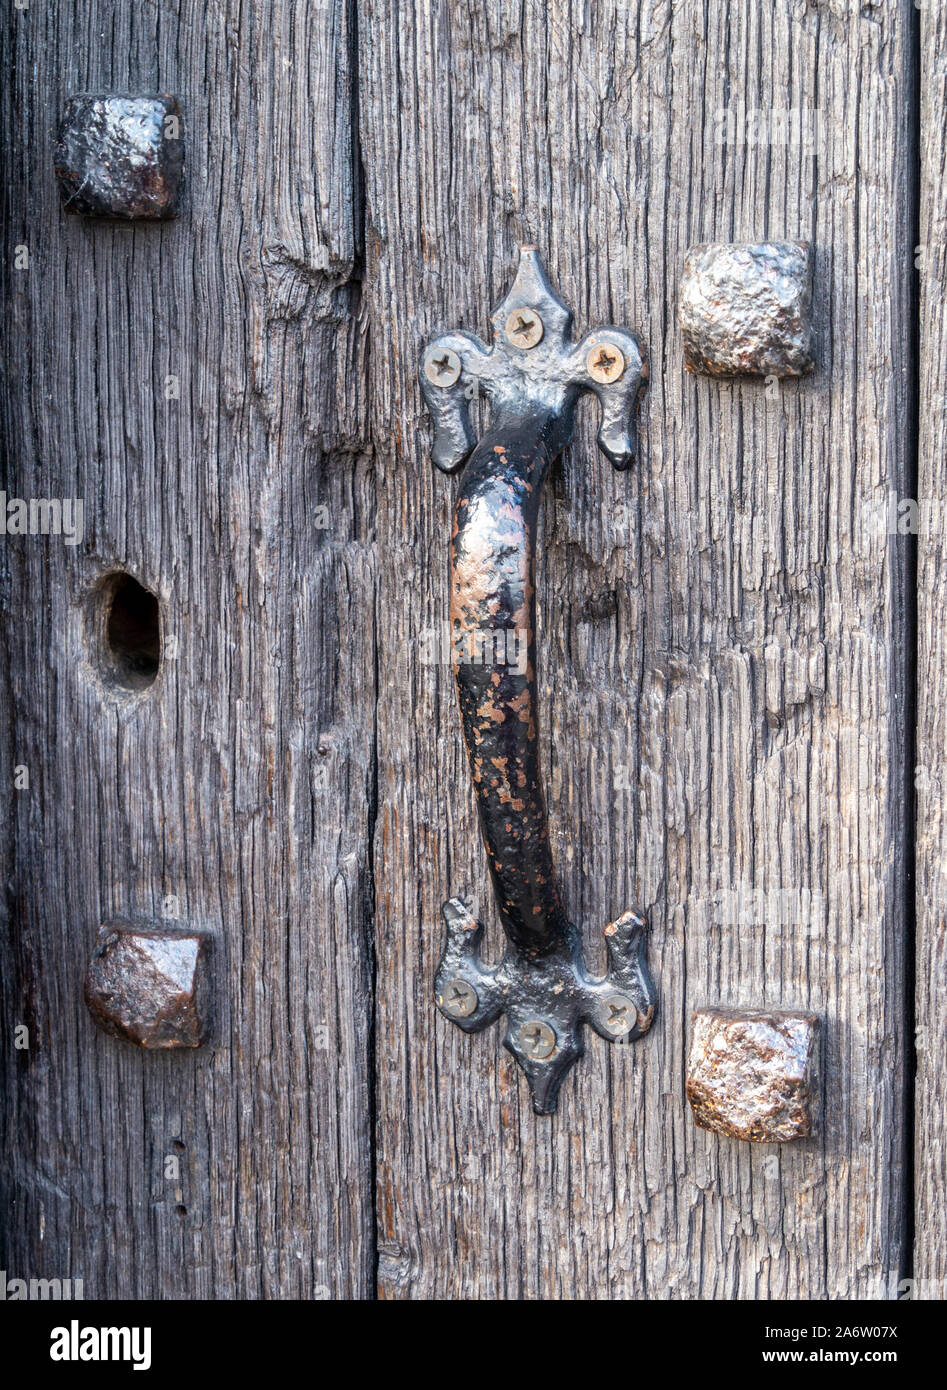 Nahaufnahme des alten Eisen Türgriff auf Nieten schwarz Eiche Holz Tür, alte John Castle, Bradgate Park, Leicestershire, England, Großbritannien Stockfoto